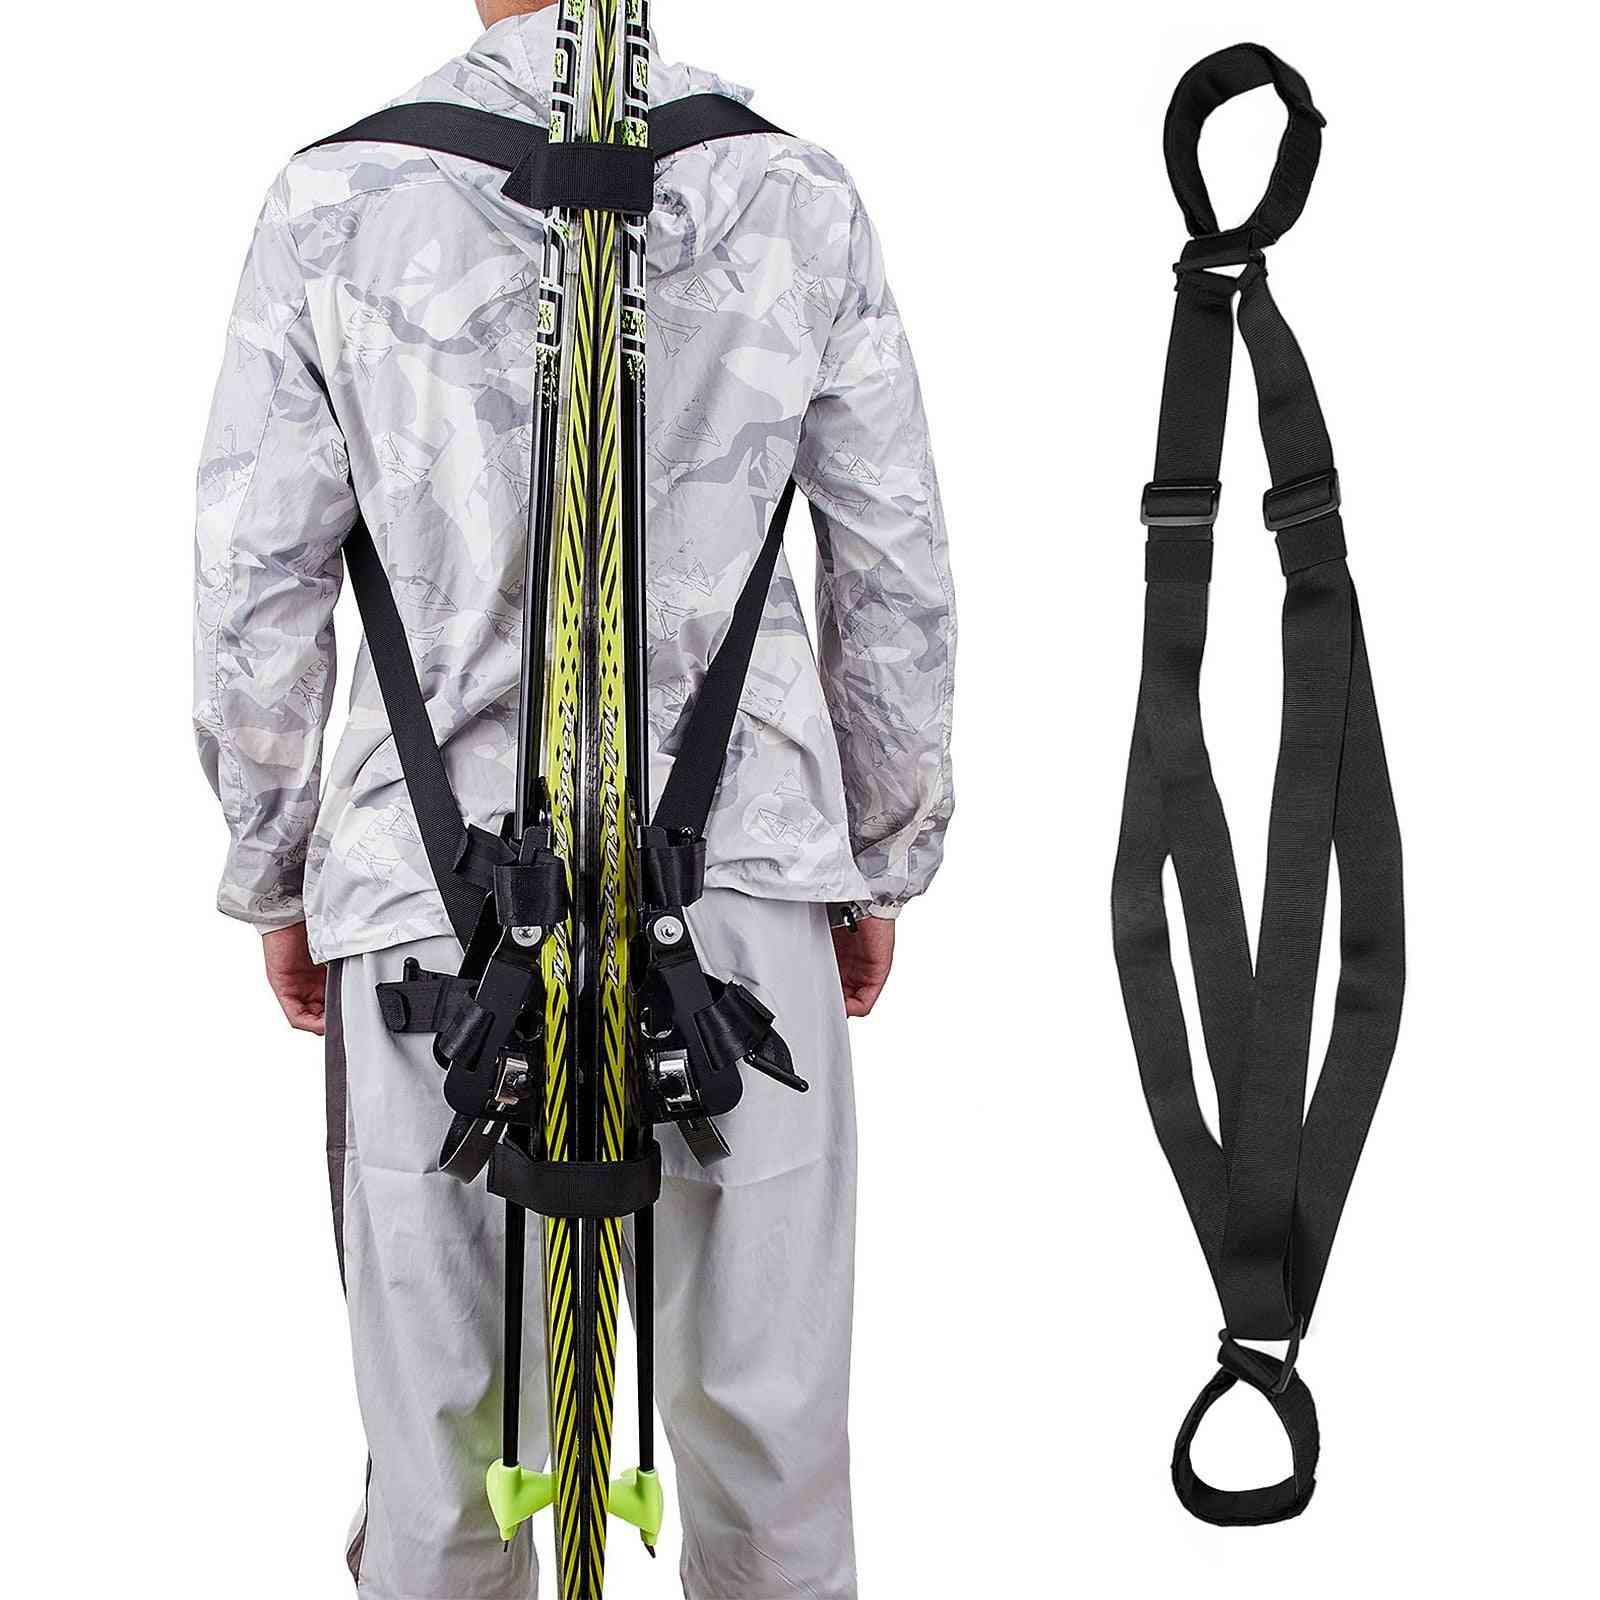 Ski Board Shoulder Belt Fixed Strap Bandage Handheld Adjustable Outdoor Sports